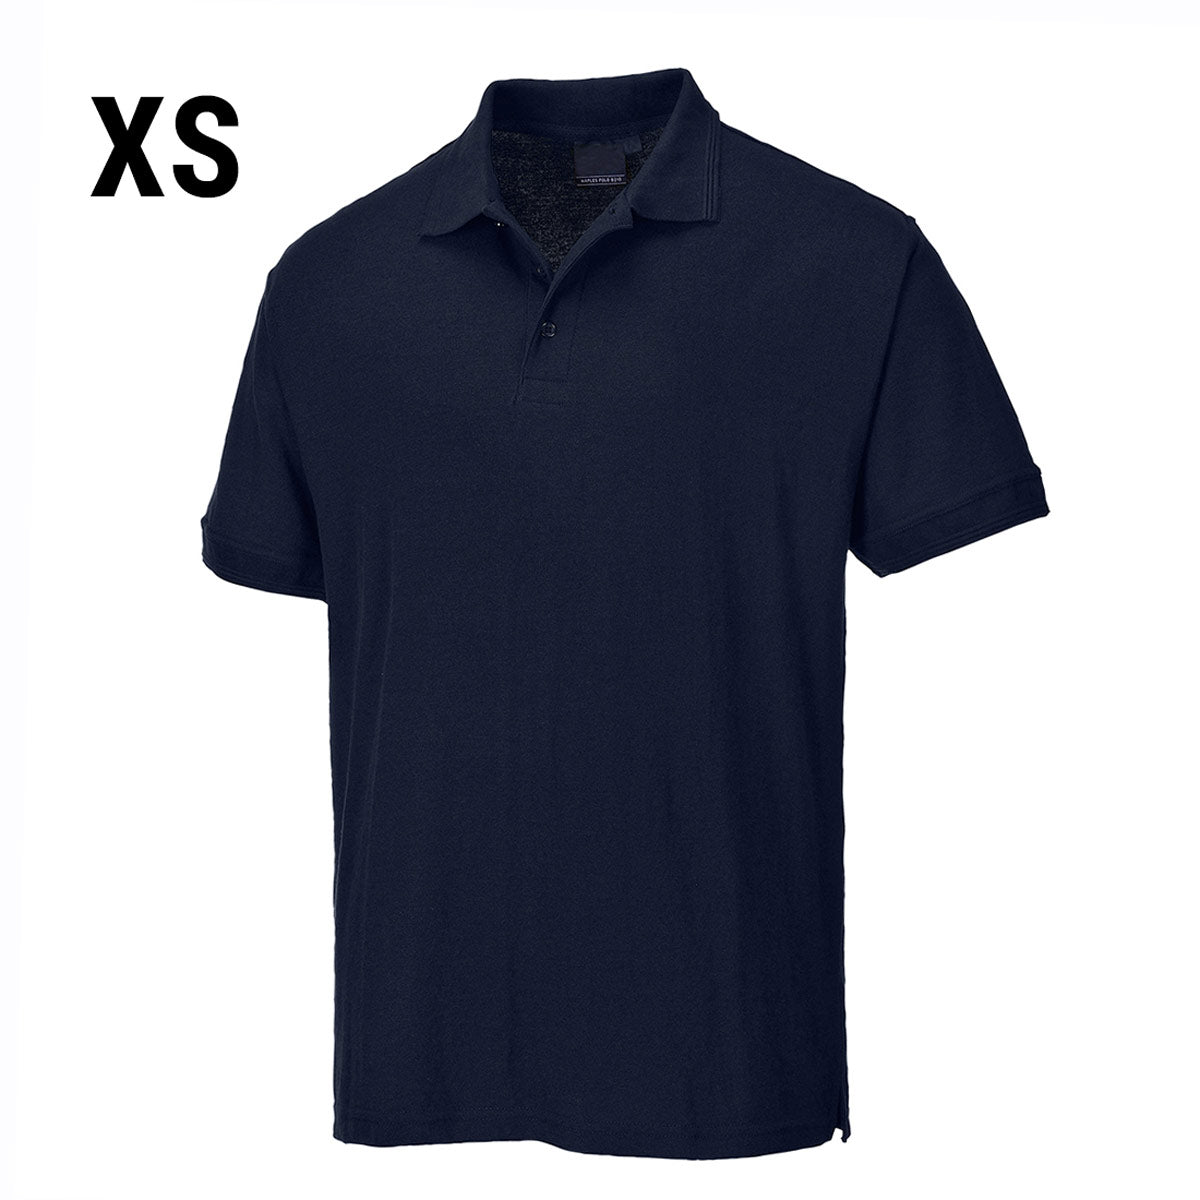 Poloskjorte til menn - Dark Navy - Størrelse: XS